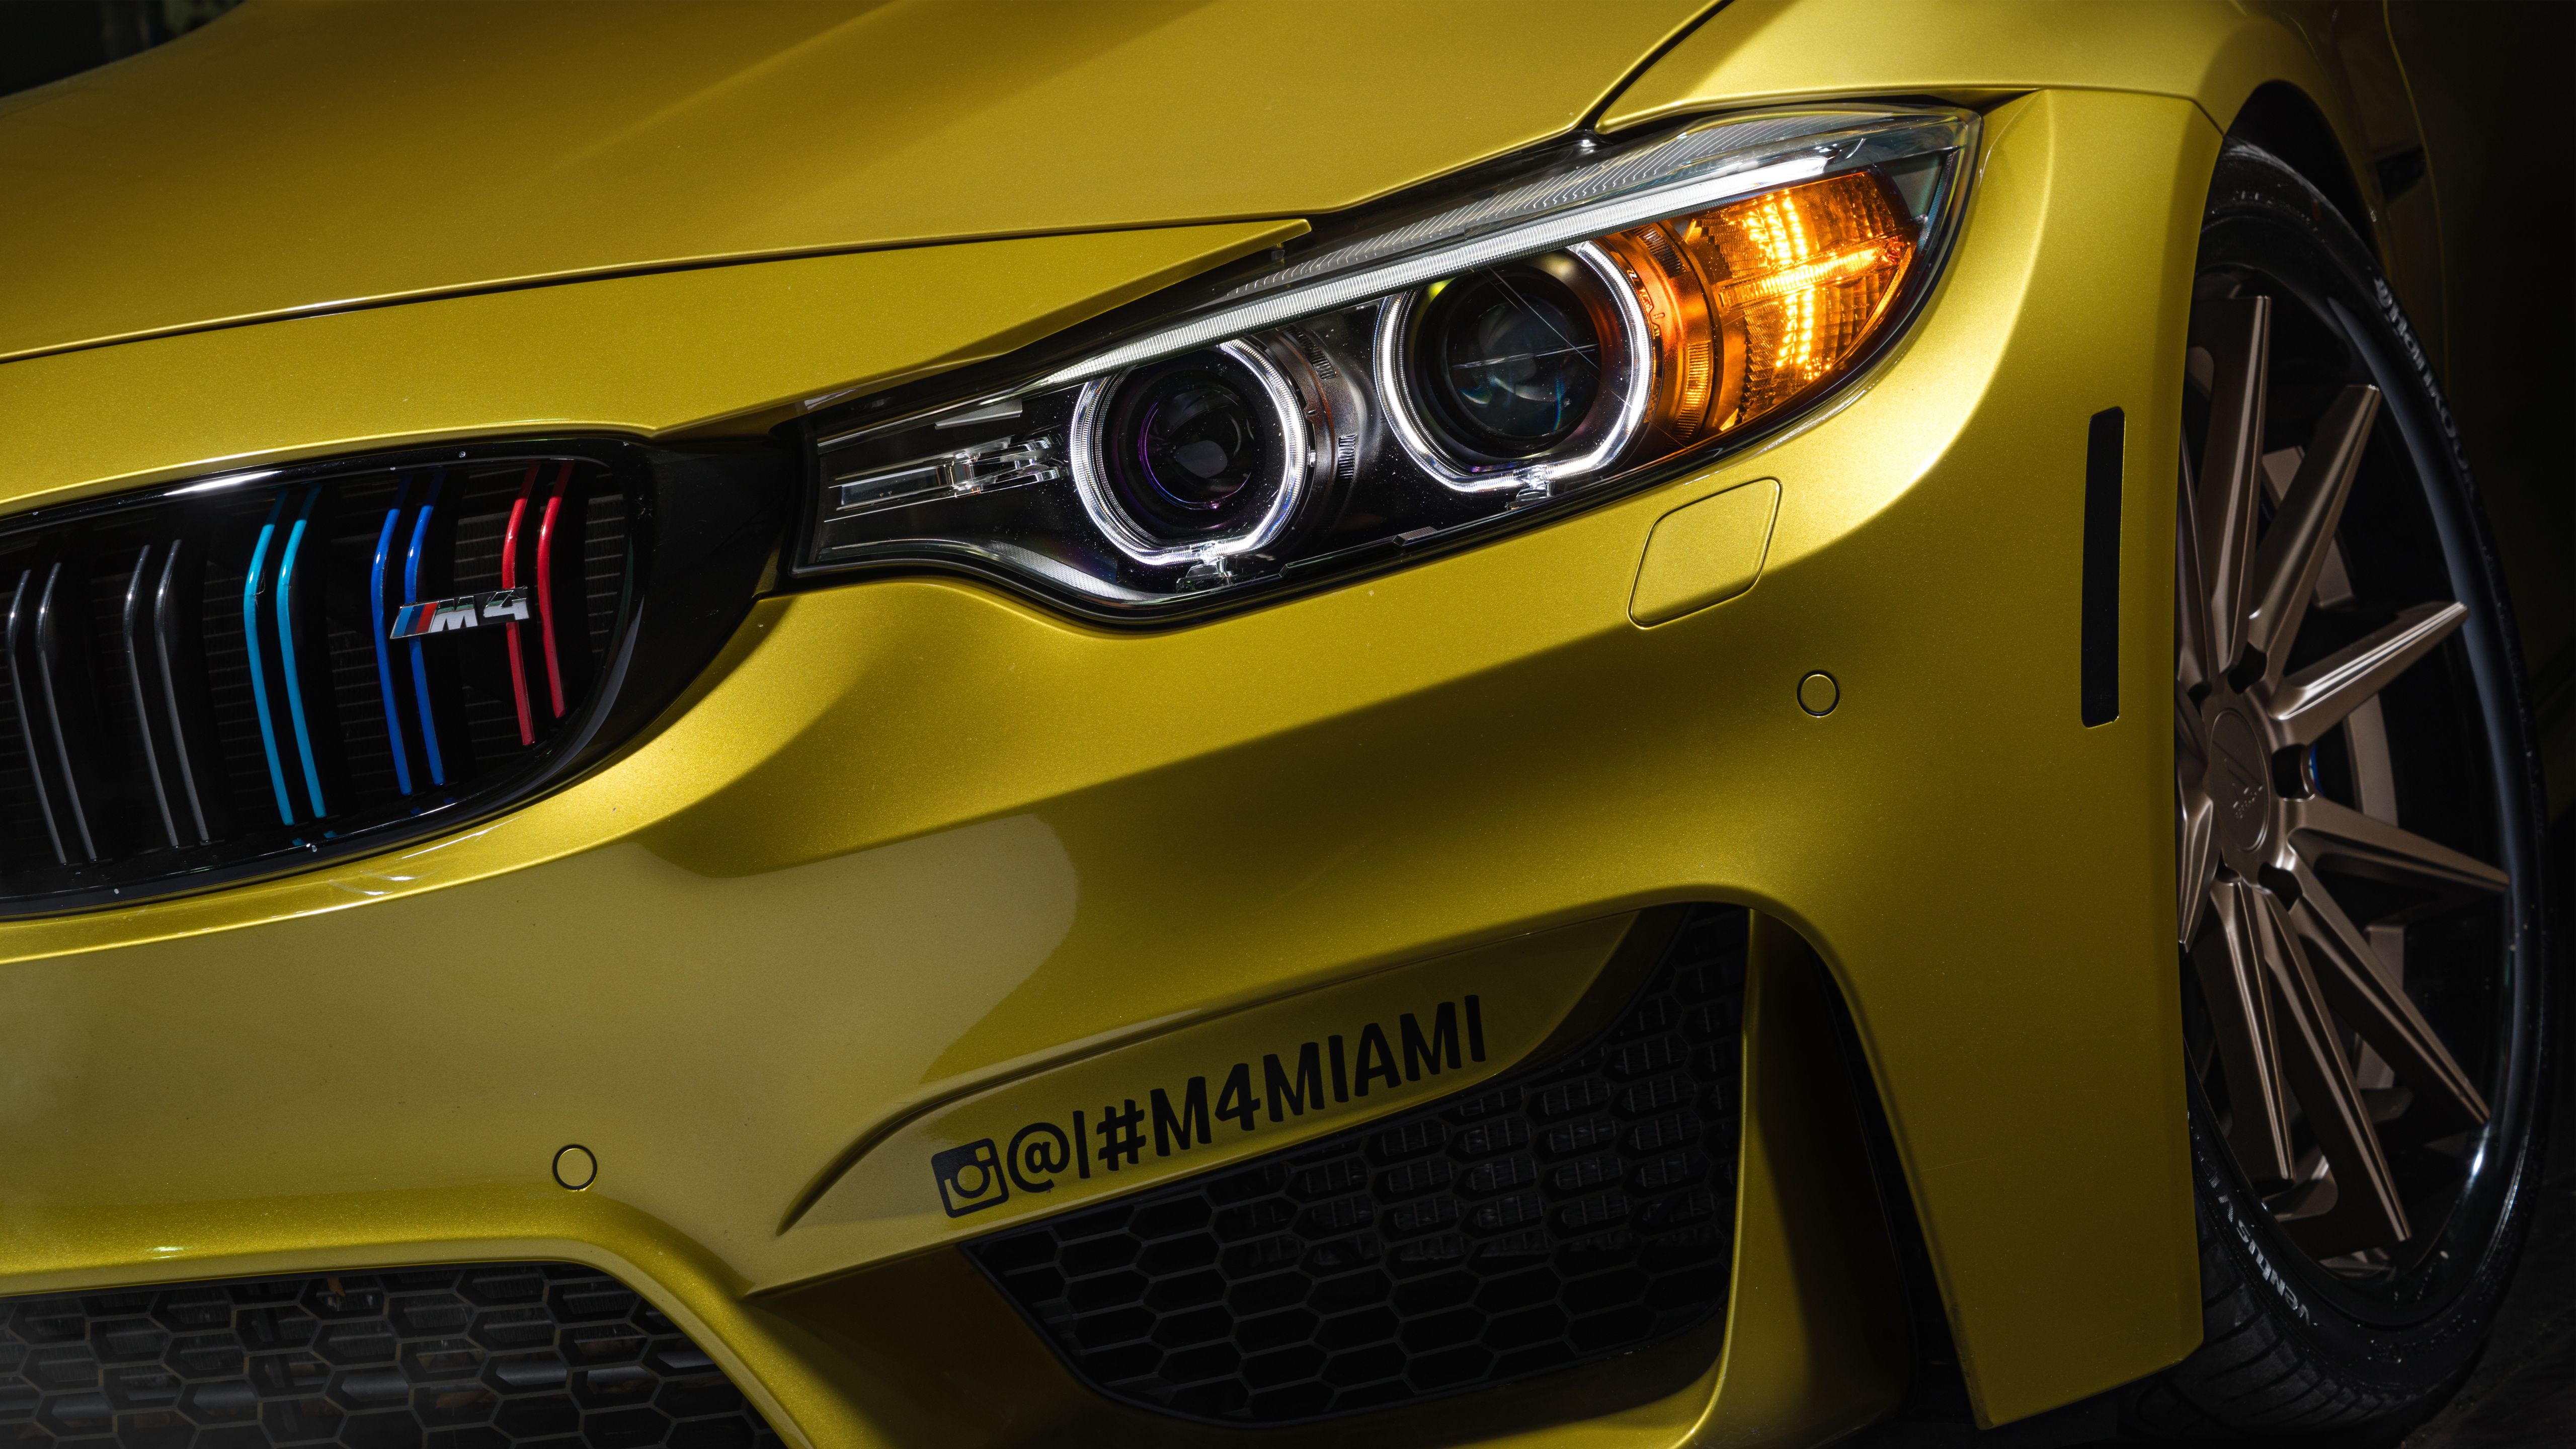 Wallpaper BMW M Austin Yellow, Miami, BMW, HD, 5K, Automotive